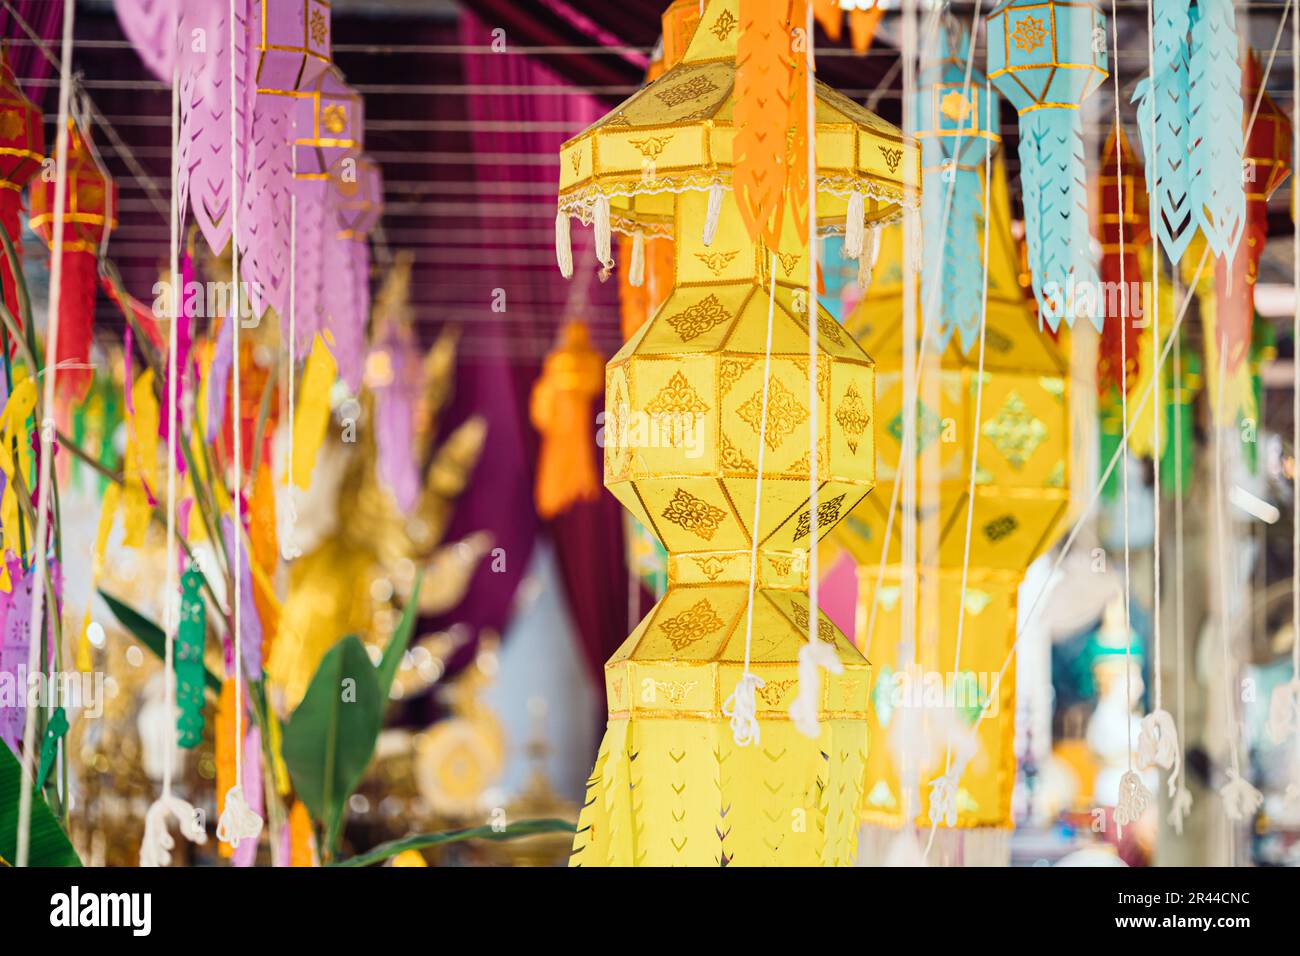 Yipeng Northern Thai Kultur hängende Laternen Papierlampe wunderschönes farbenfrohes traditionelles Lanna Festival im Tempel. Stockfoto